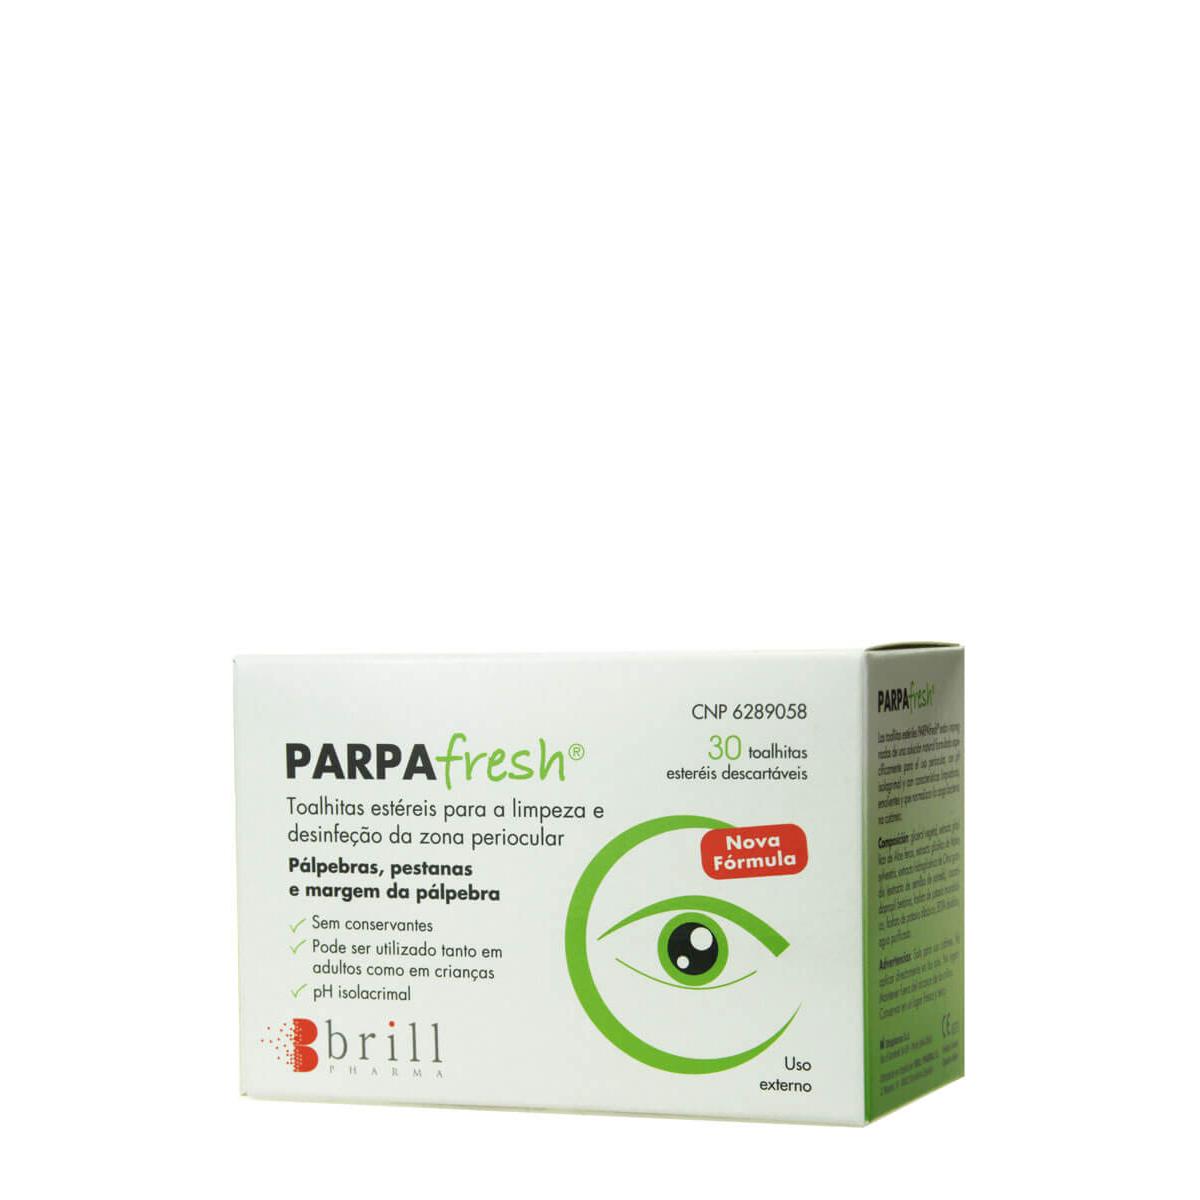 Brill Pharma - Parpafresh toallitas estériles 30 toallitas